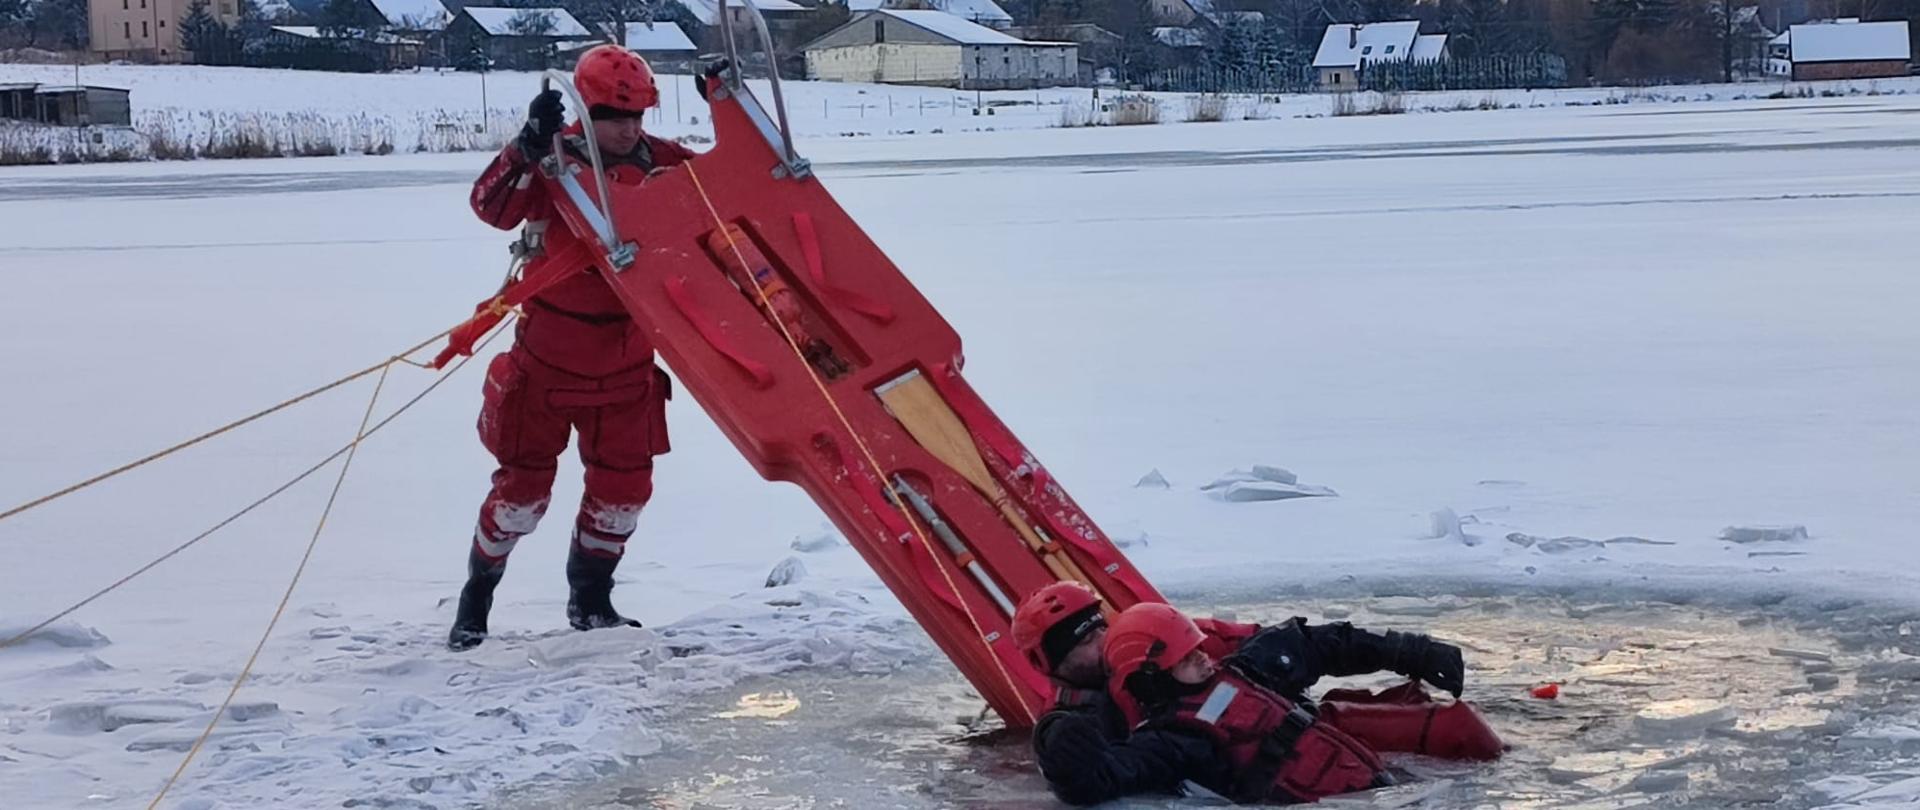 Zdjęcie przedstawia pozorującego topienie się w przerębli odpowiednio zabezpieczonego ratownika, którego ratuje dwóch strażaków. Jeden znajduje się w wodzie asekurując poszkodowanego, a drugi, przy użyciu sań lodowych pomaga ewakuować zagrożoną osobę z wody.